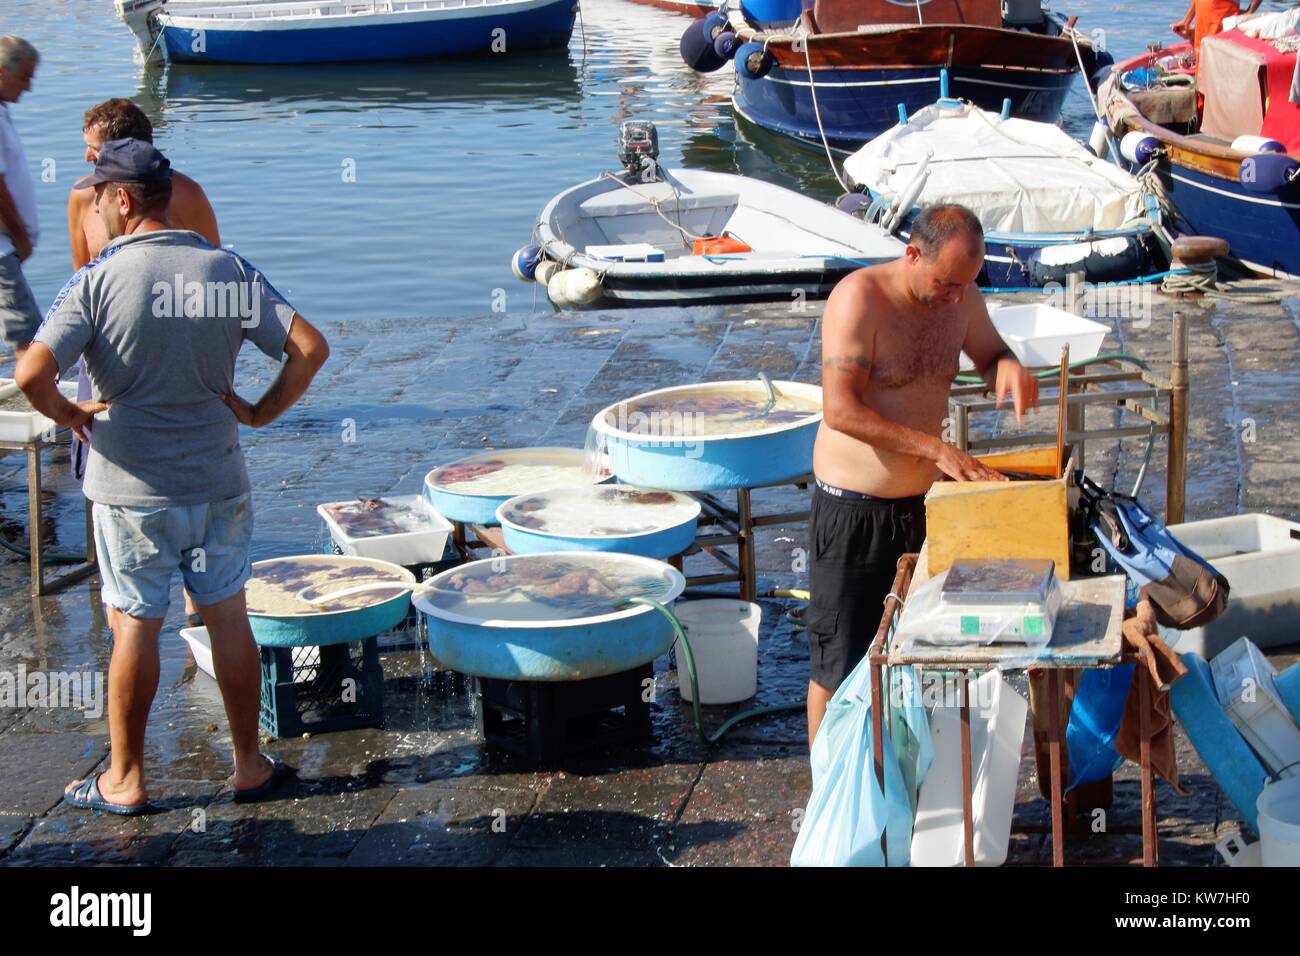 A NAPOLI - ITALIA - IL 07/09/2017 - i pescatori vendere pesce fresco a Mergellina a Napoli, Foto Stock